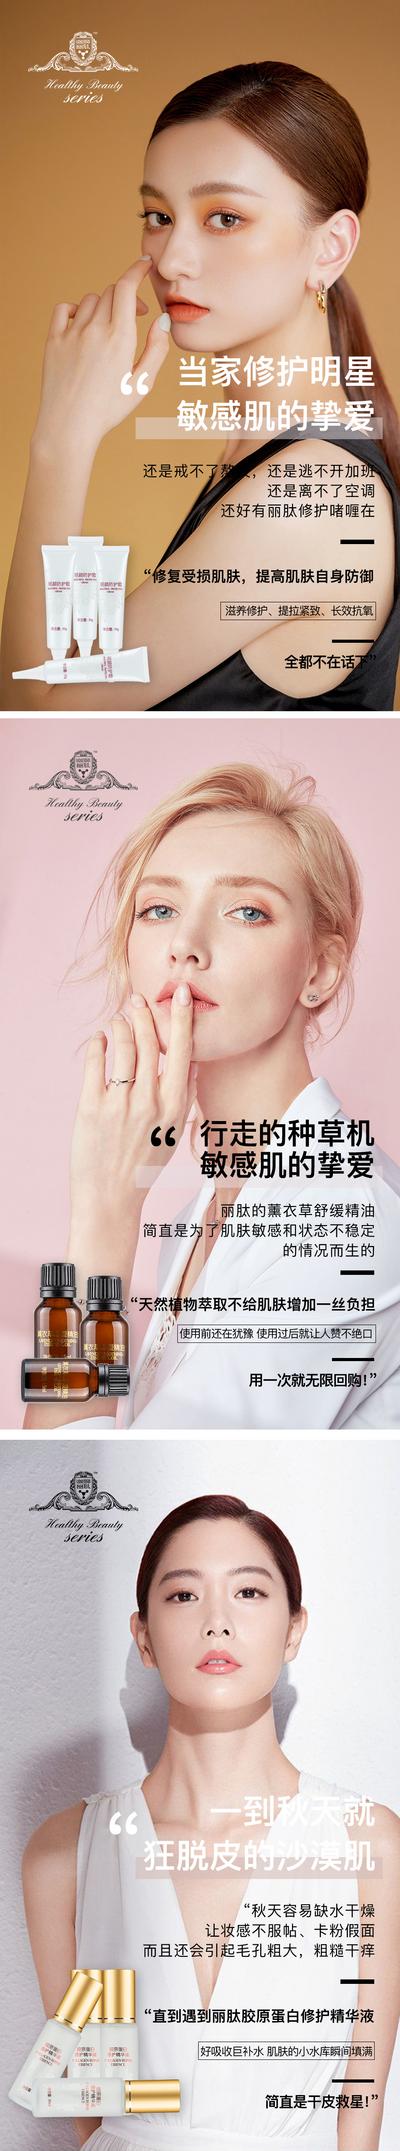 南门网 海报 医美 化妆品 护肤品 人物 系列